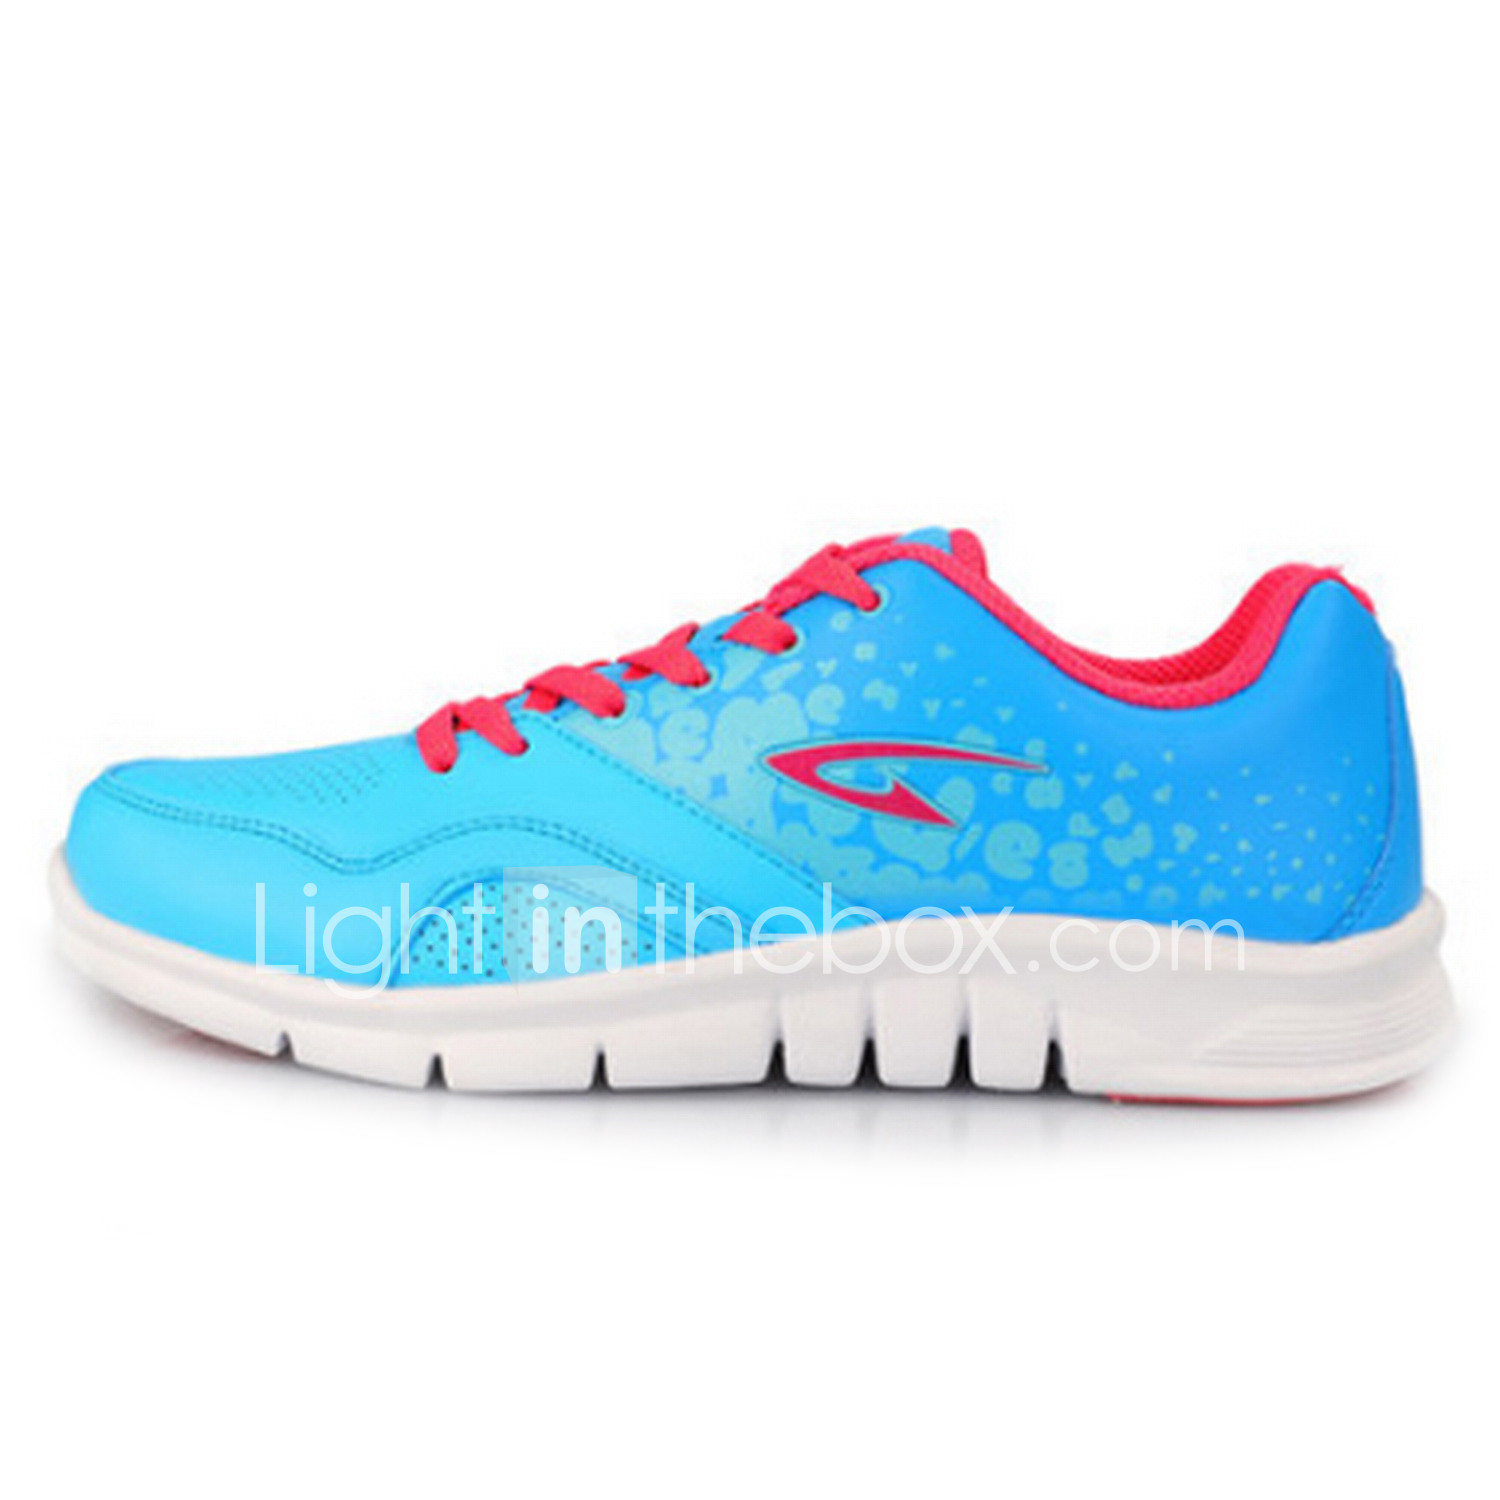 Deerway® Women's Running Shoes More 